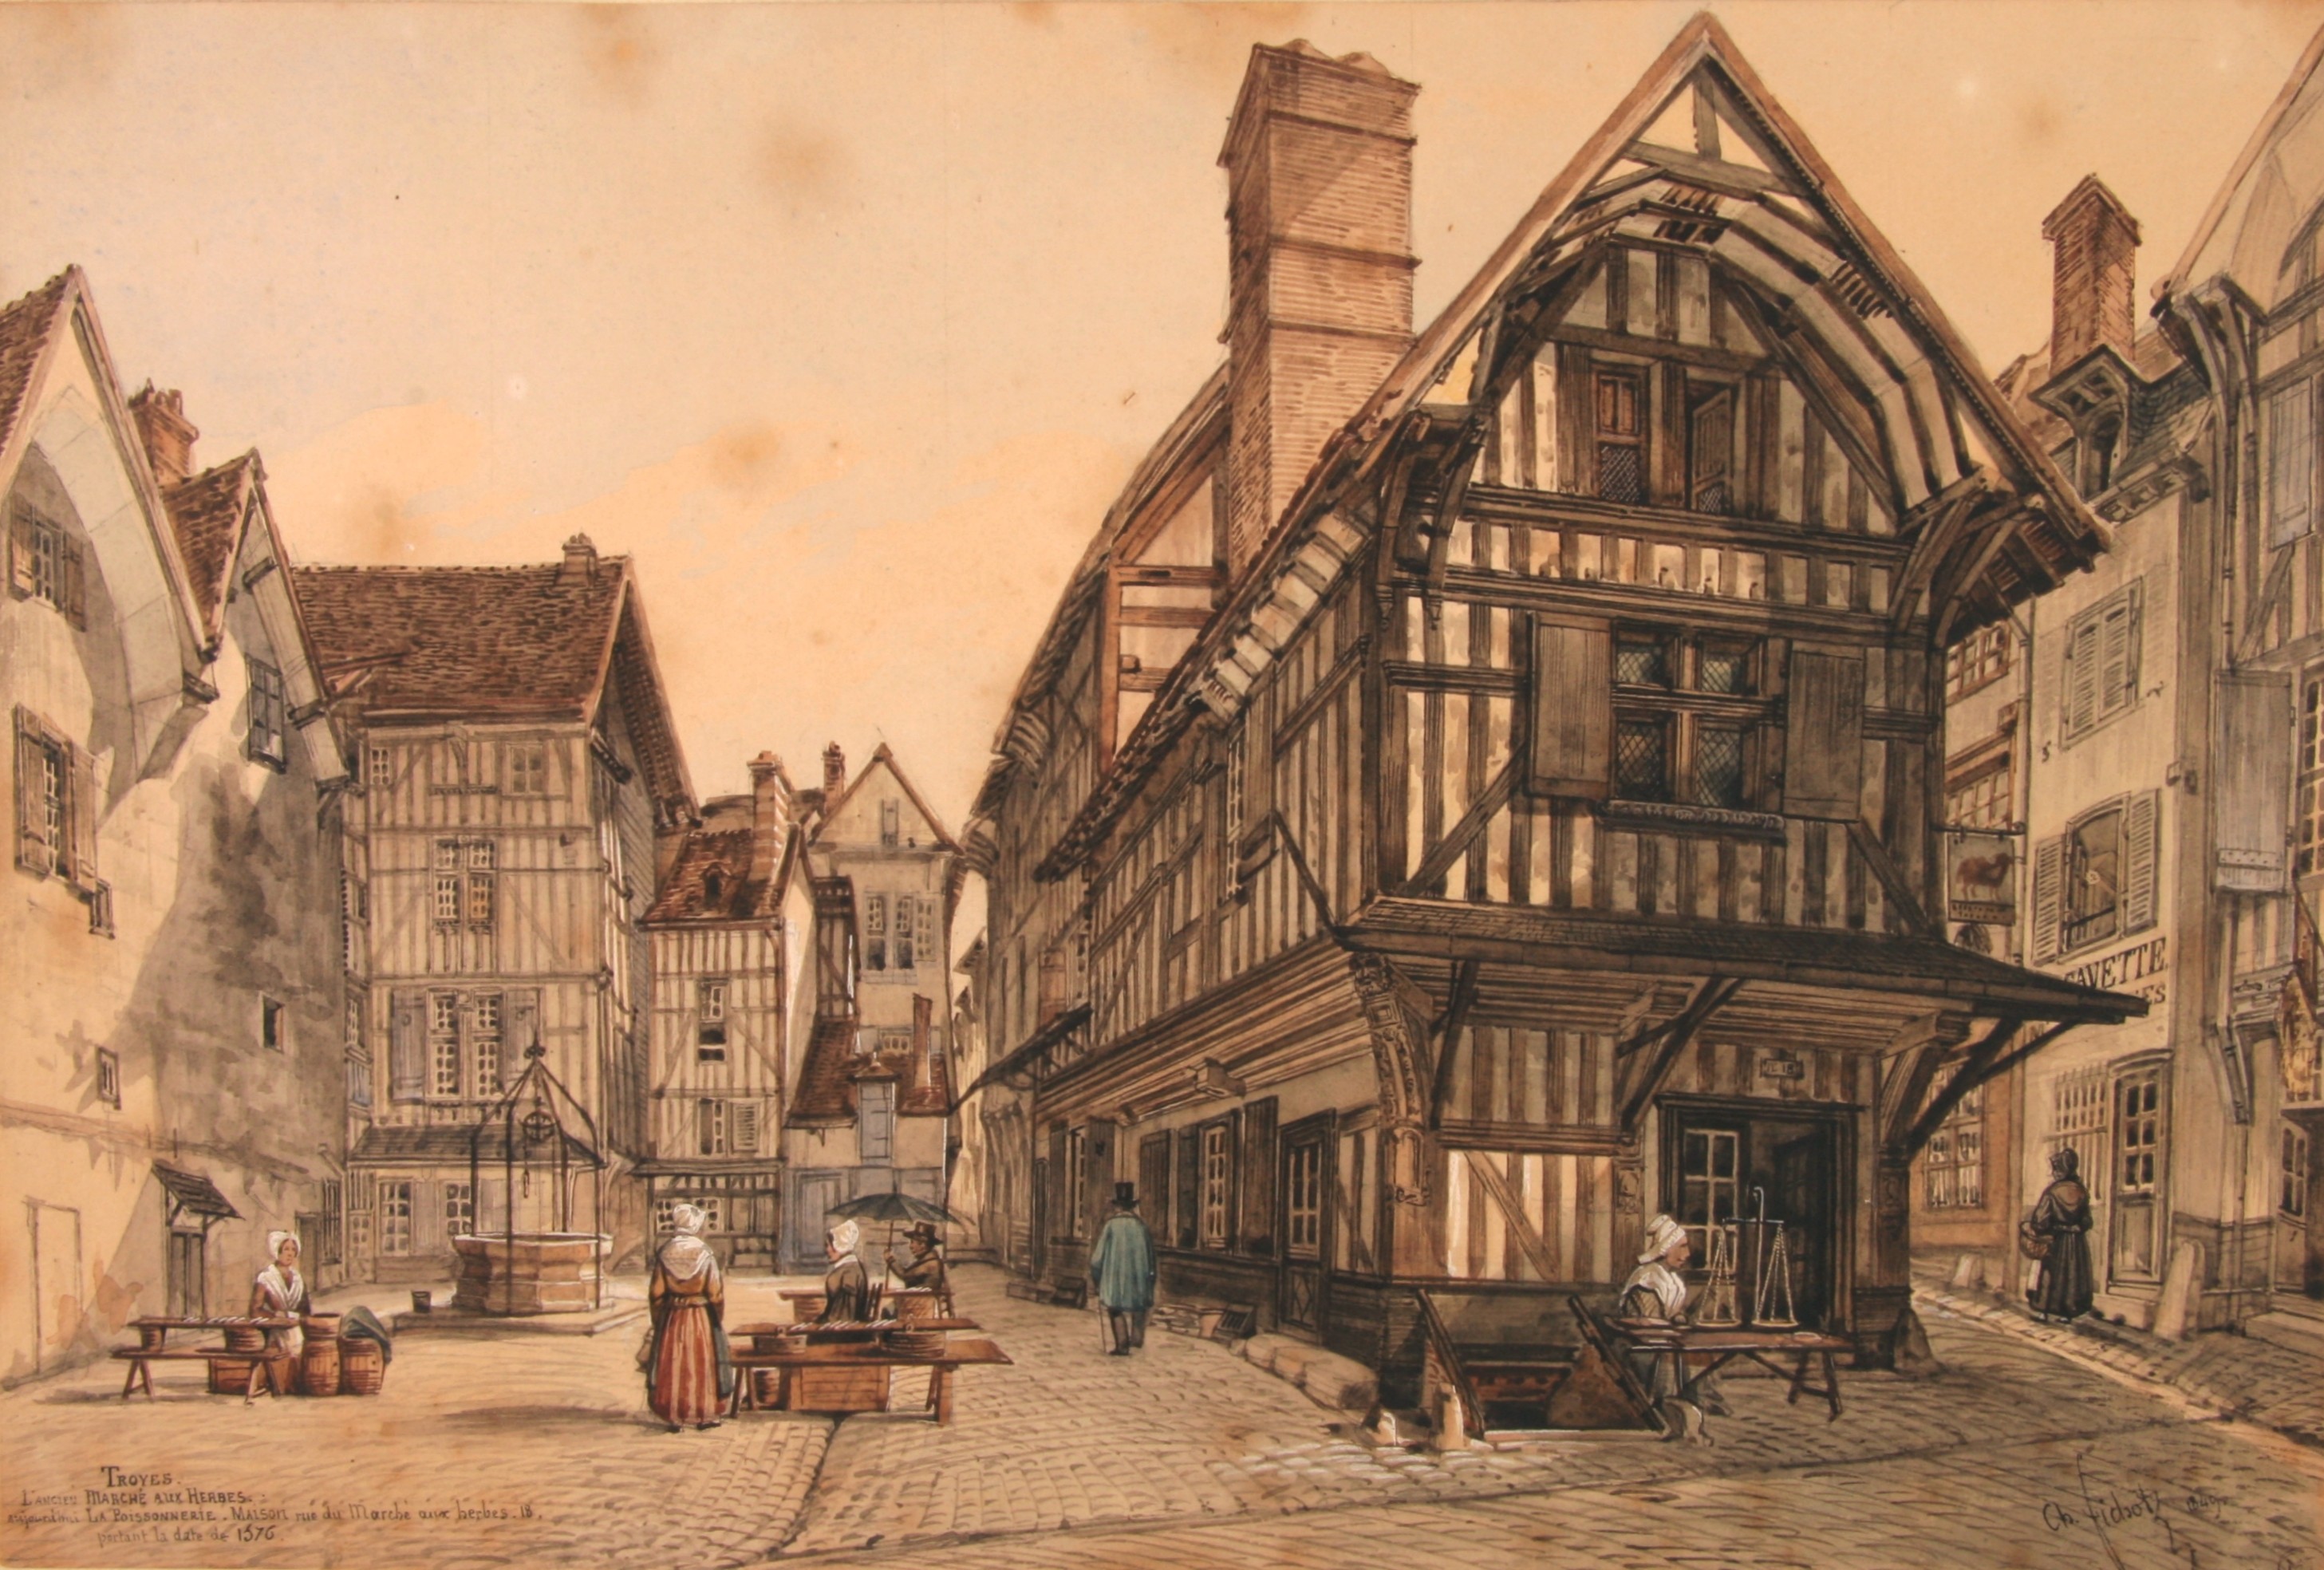 Tableau de Charles Fichot de l’ancien marché aux herbes à Troyes, en Champagne. © DP